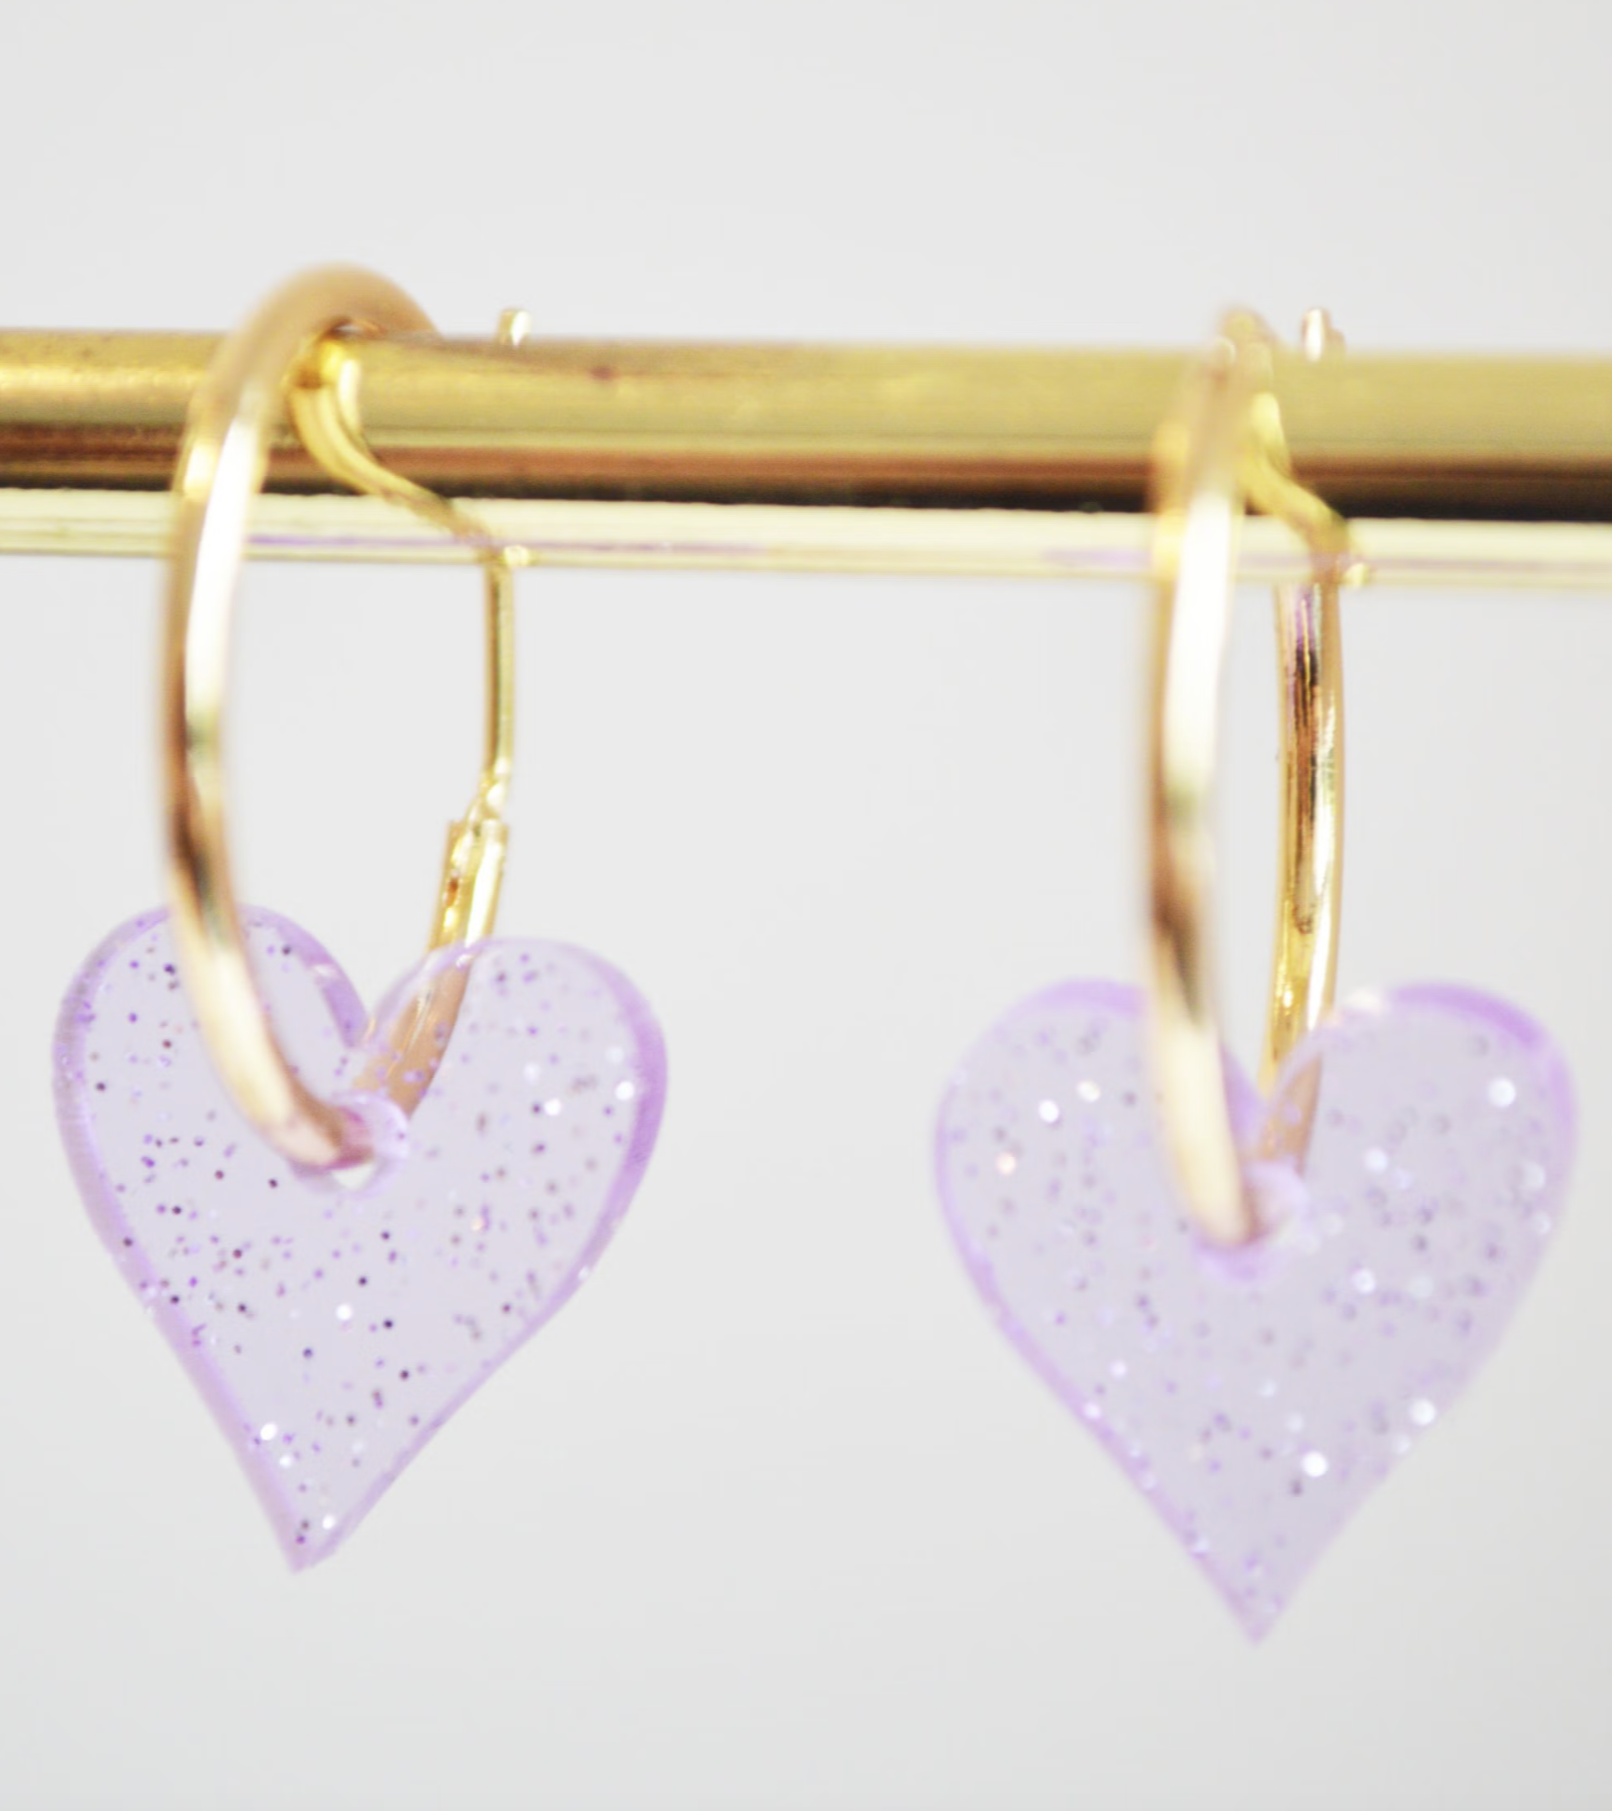 Hagen & Co Mini Heart Earrings - Lilac Sparkle